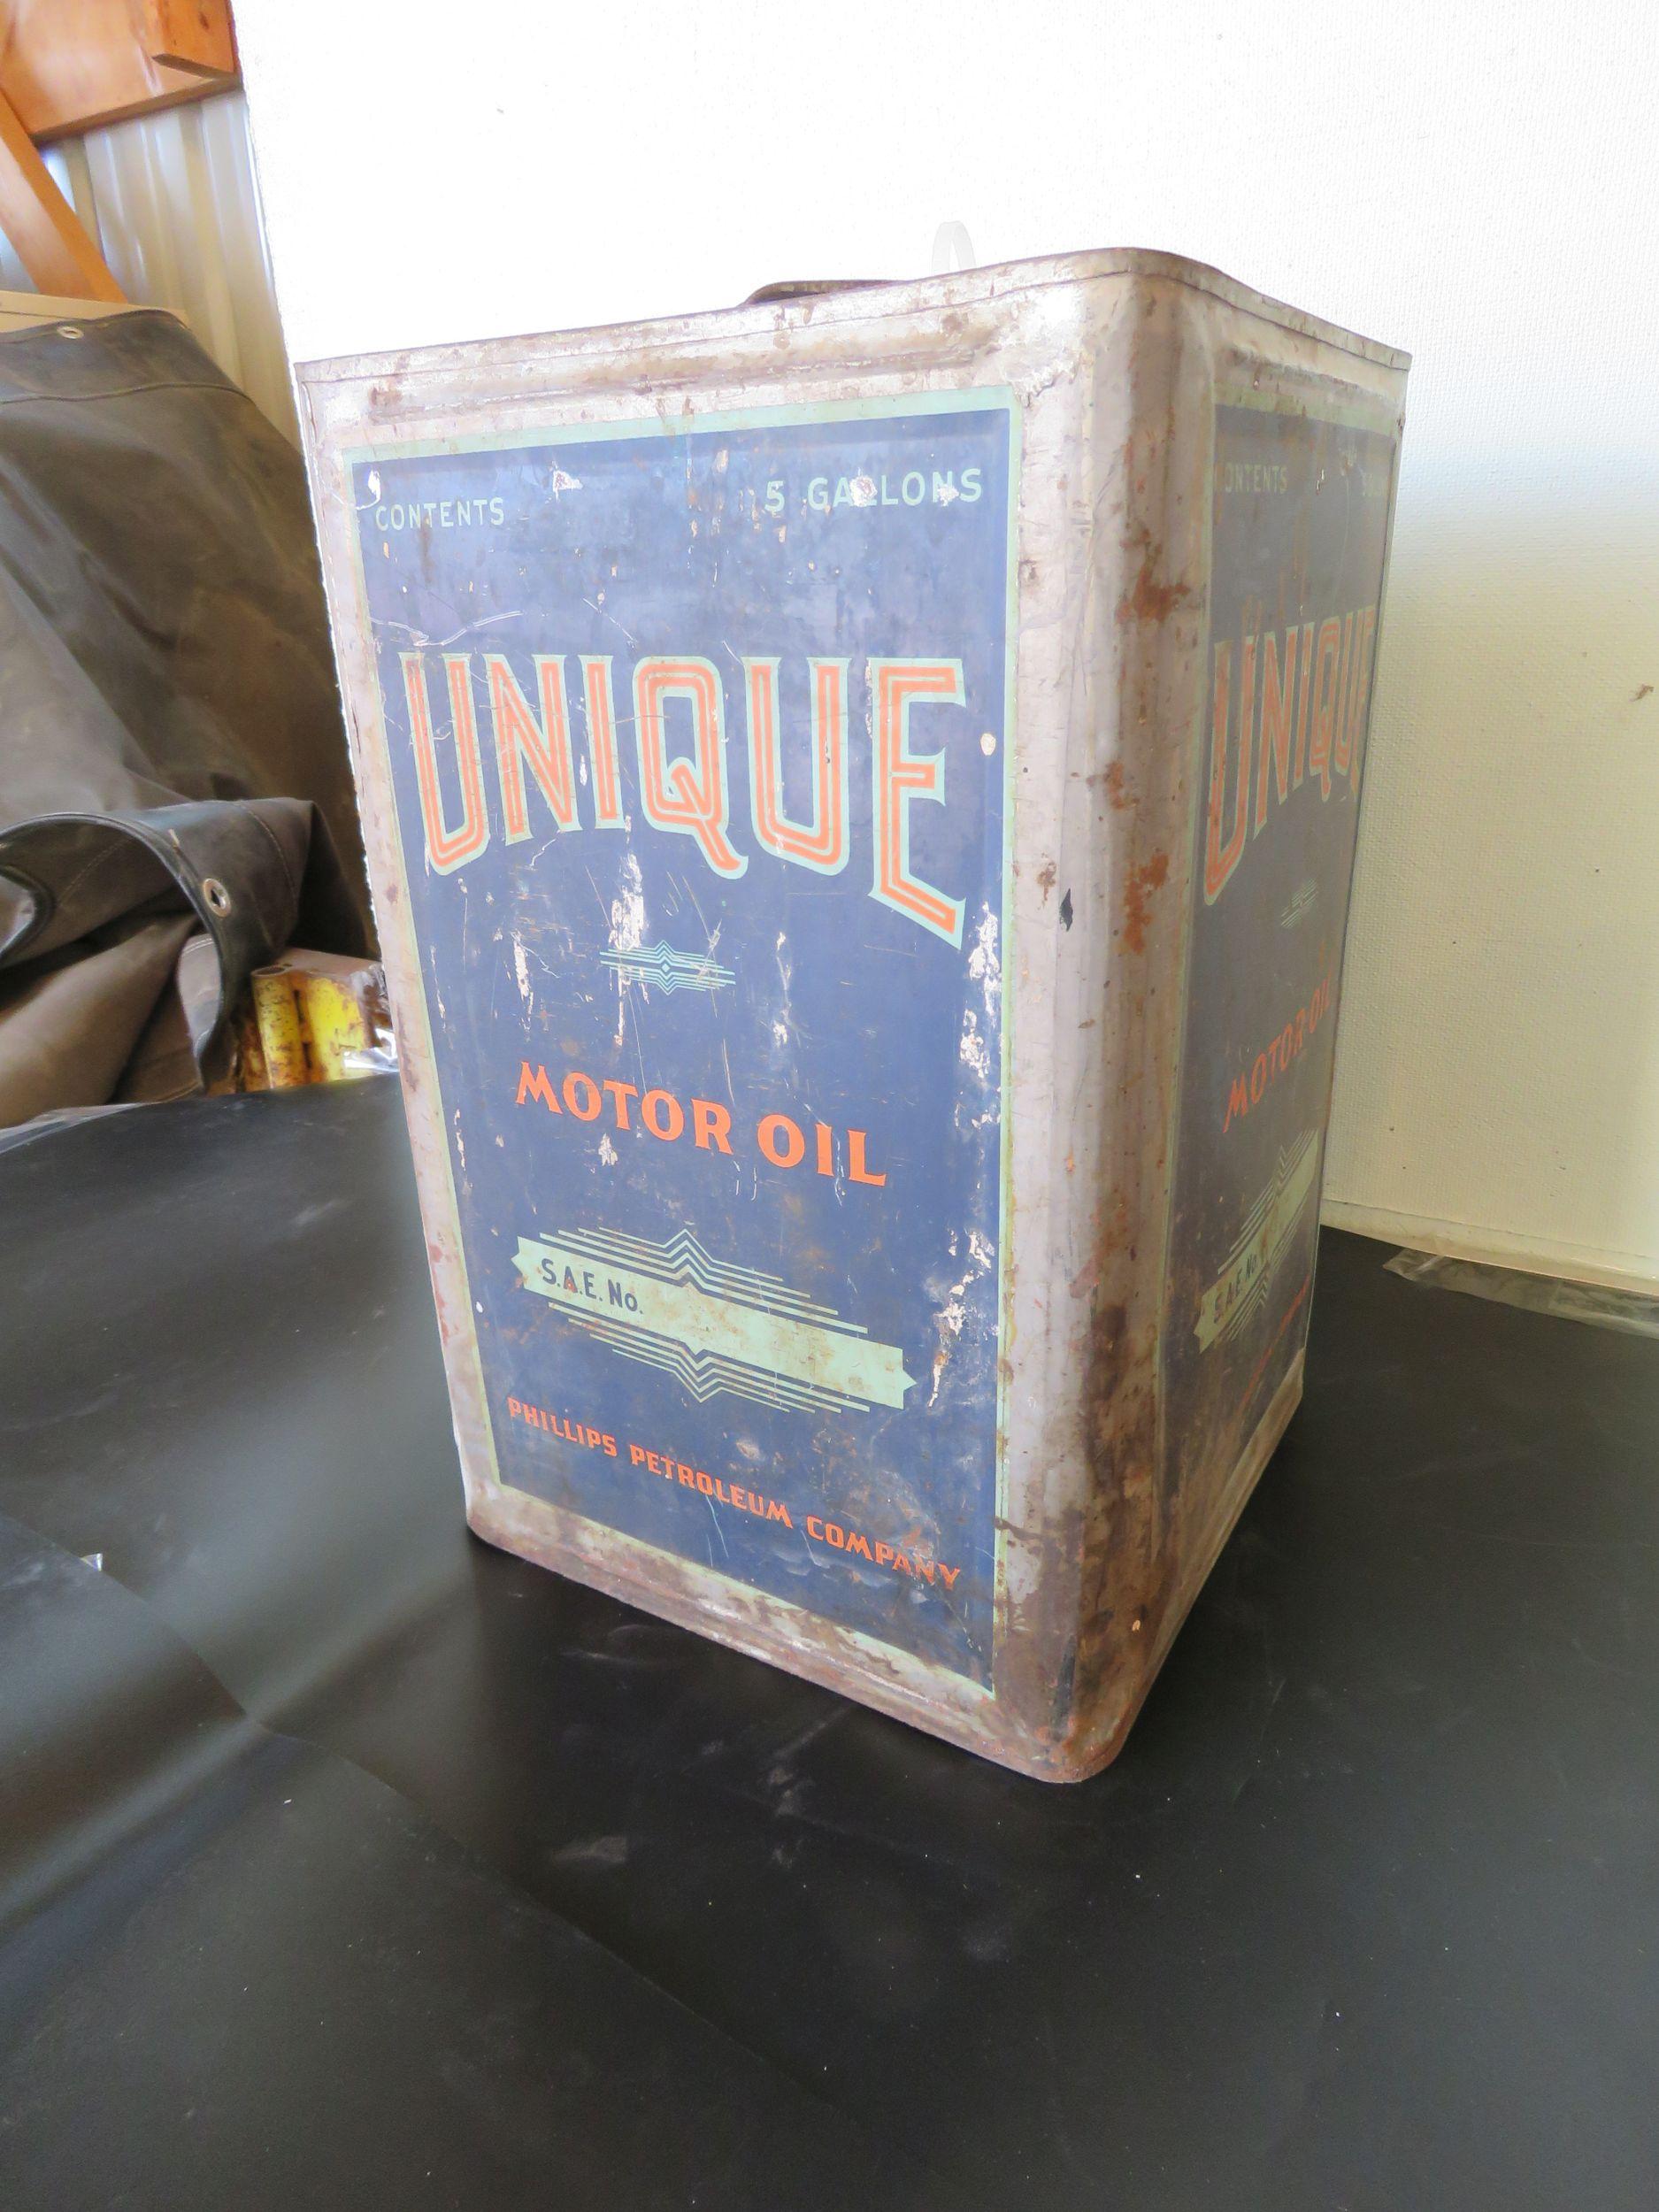 Unique Motor Oil 5 gallon can